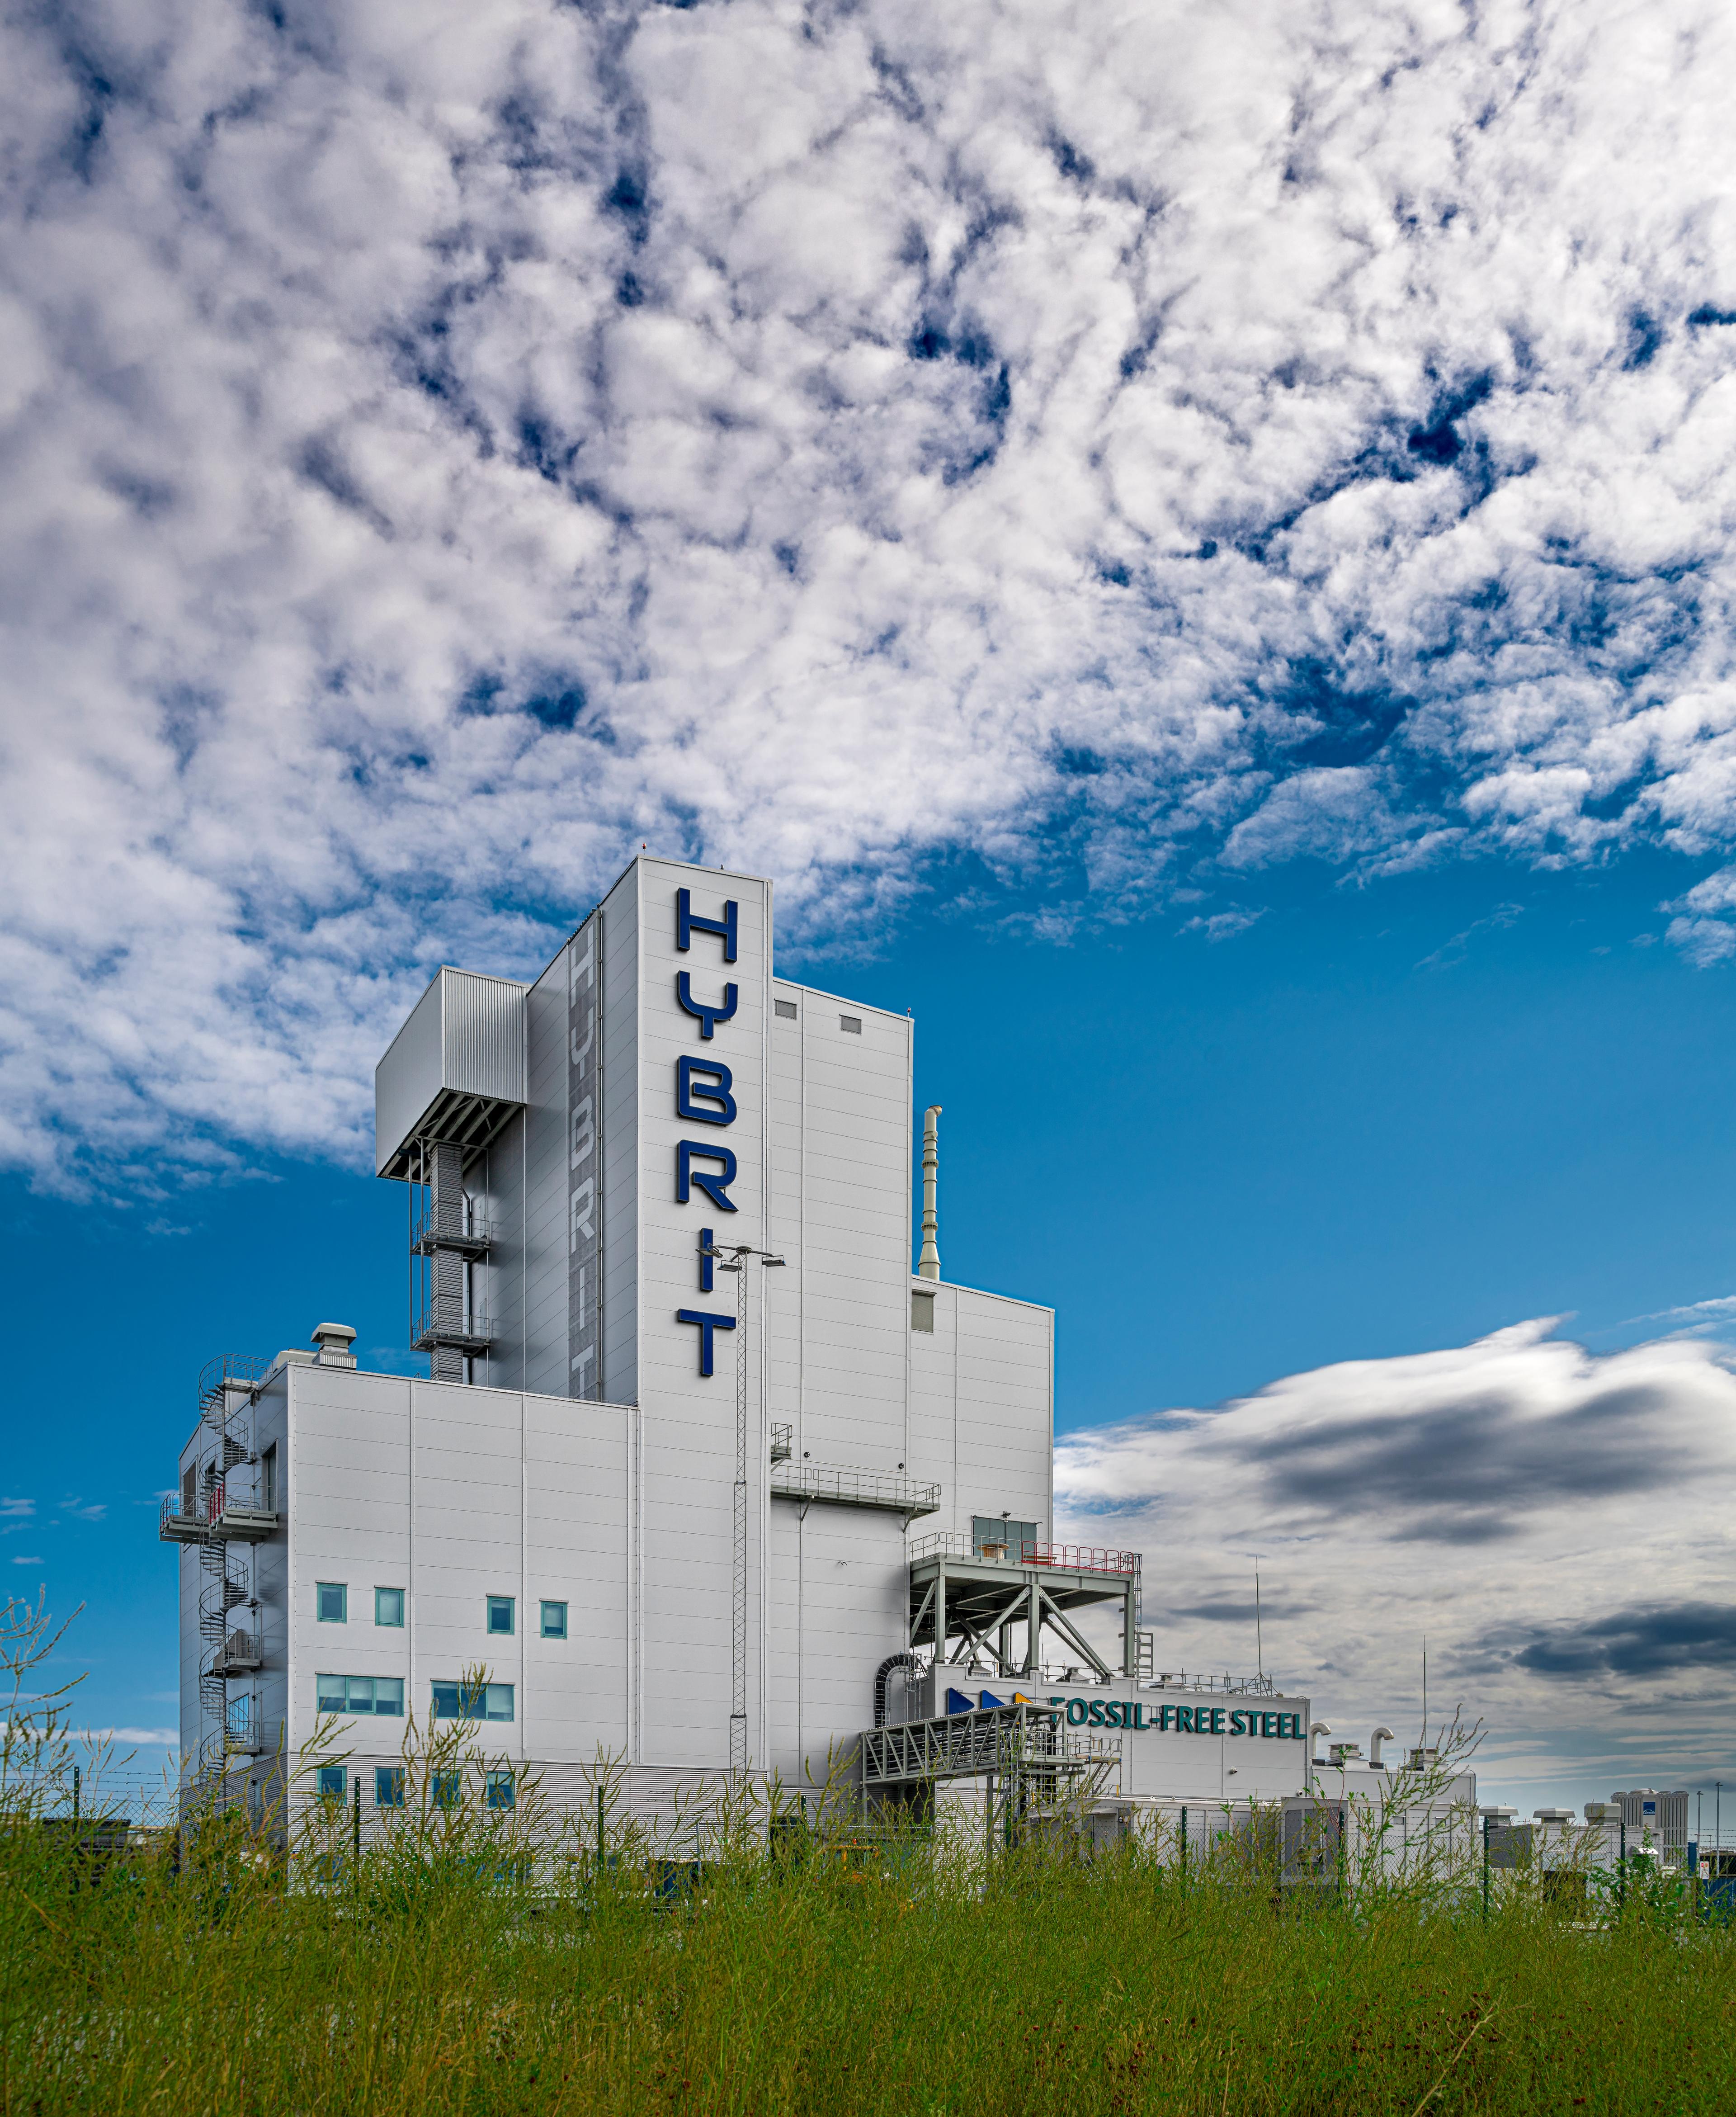 تمتلك شركة تصنيع الفولاذ الخالي من الأحافير HYBRIT مصنعًا تجريبيًا في مدينة لوليا الشمالية. الصورة: Jann Lipka/imagebank.sweden.se